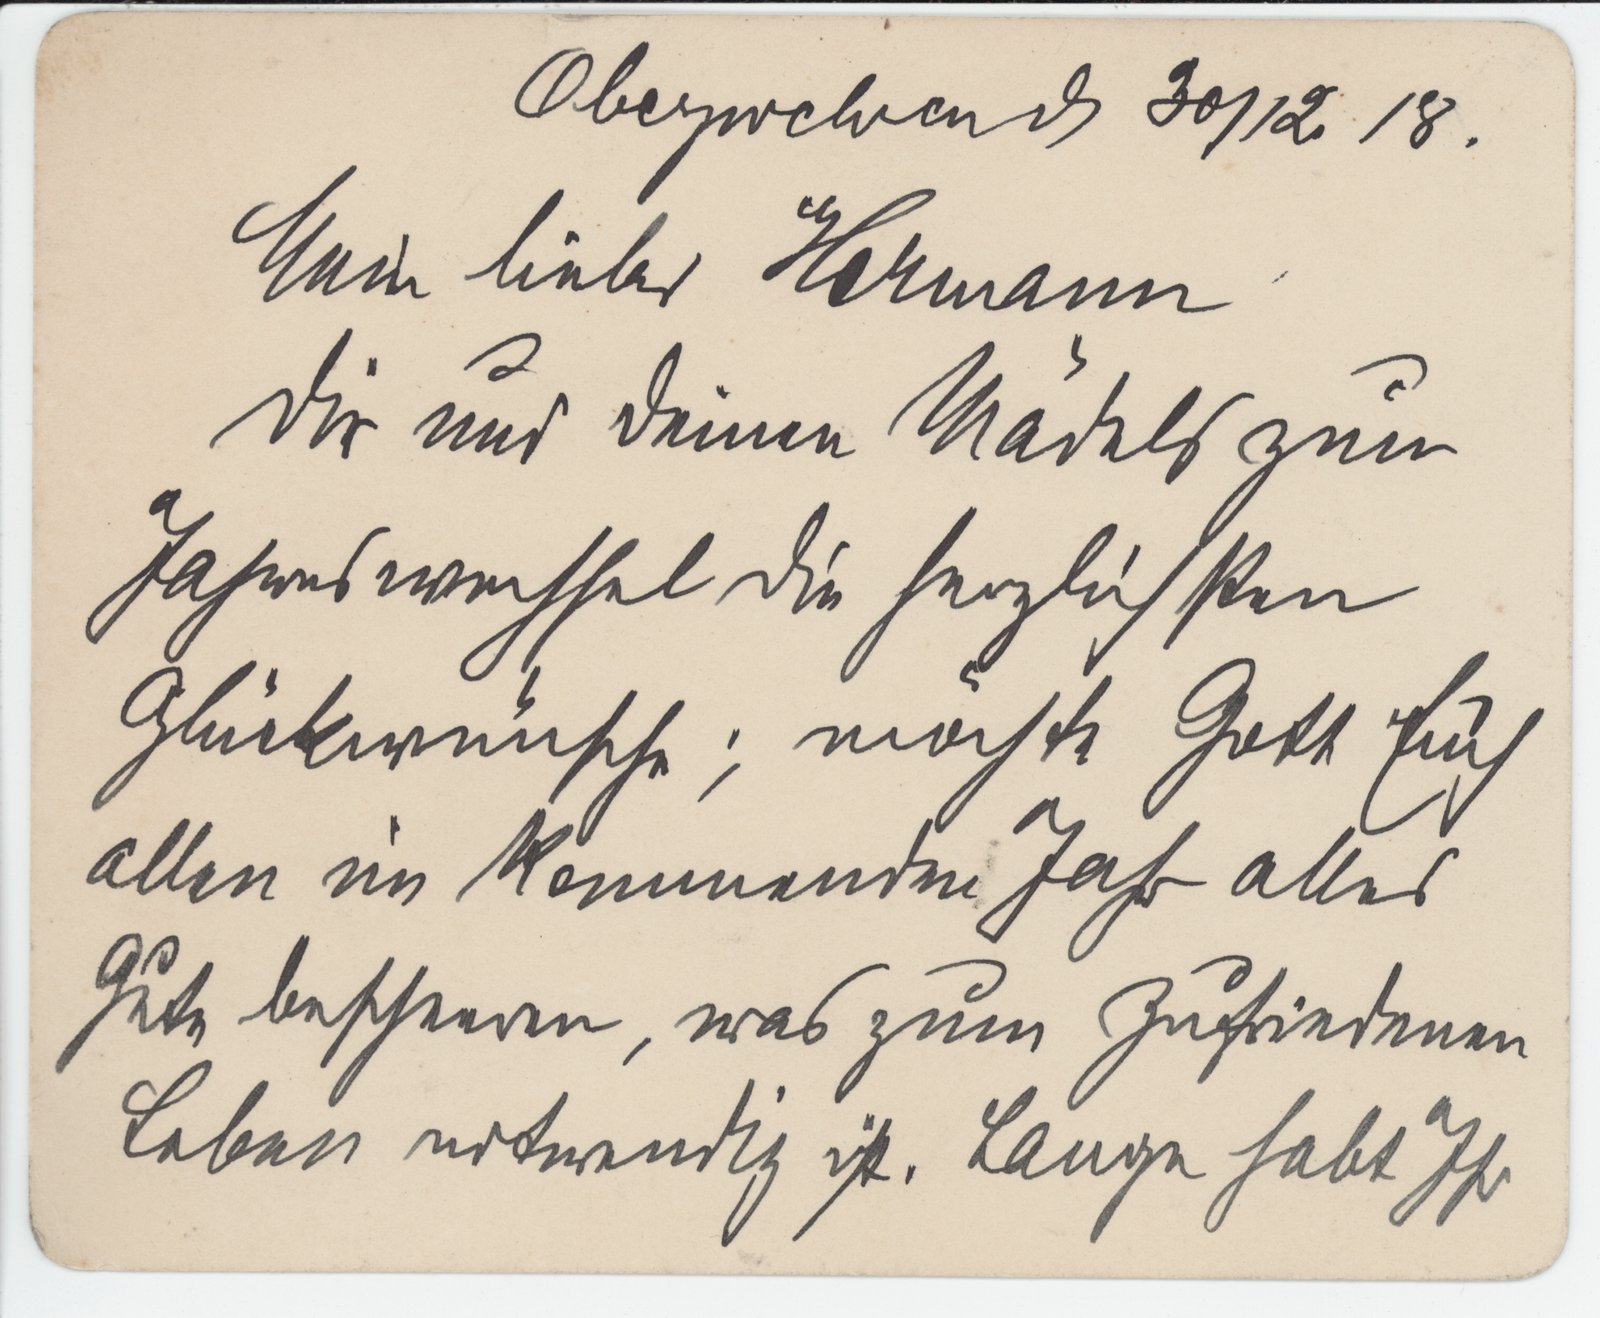 Unbekannt an Hermann, 30.12.1908 (Heimatverein "Alter Krug" Zossen e.V. CC BY-NC-SA)